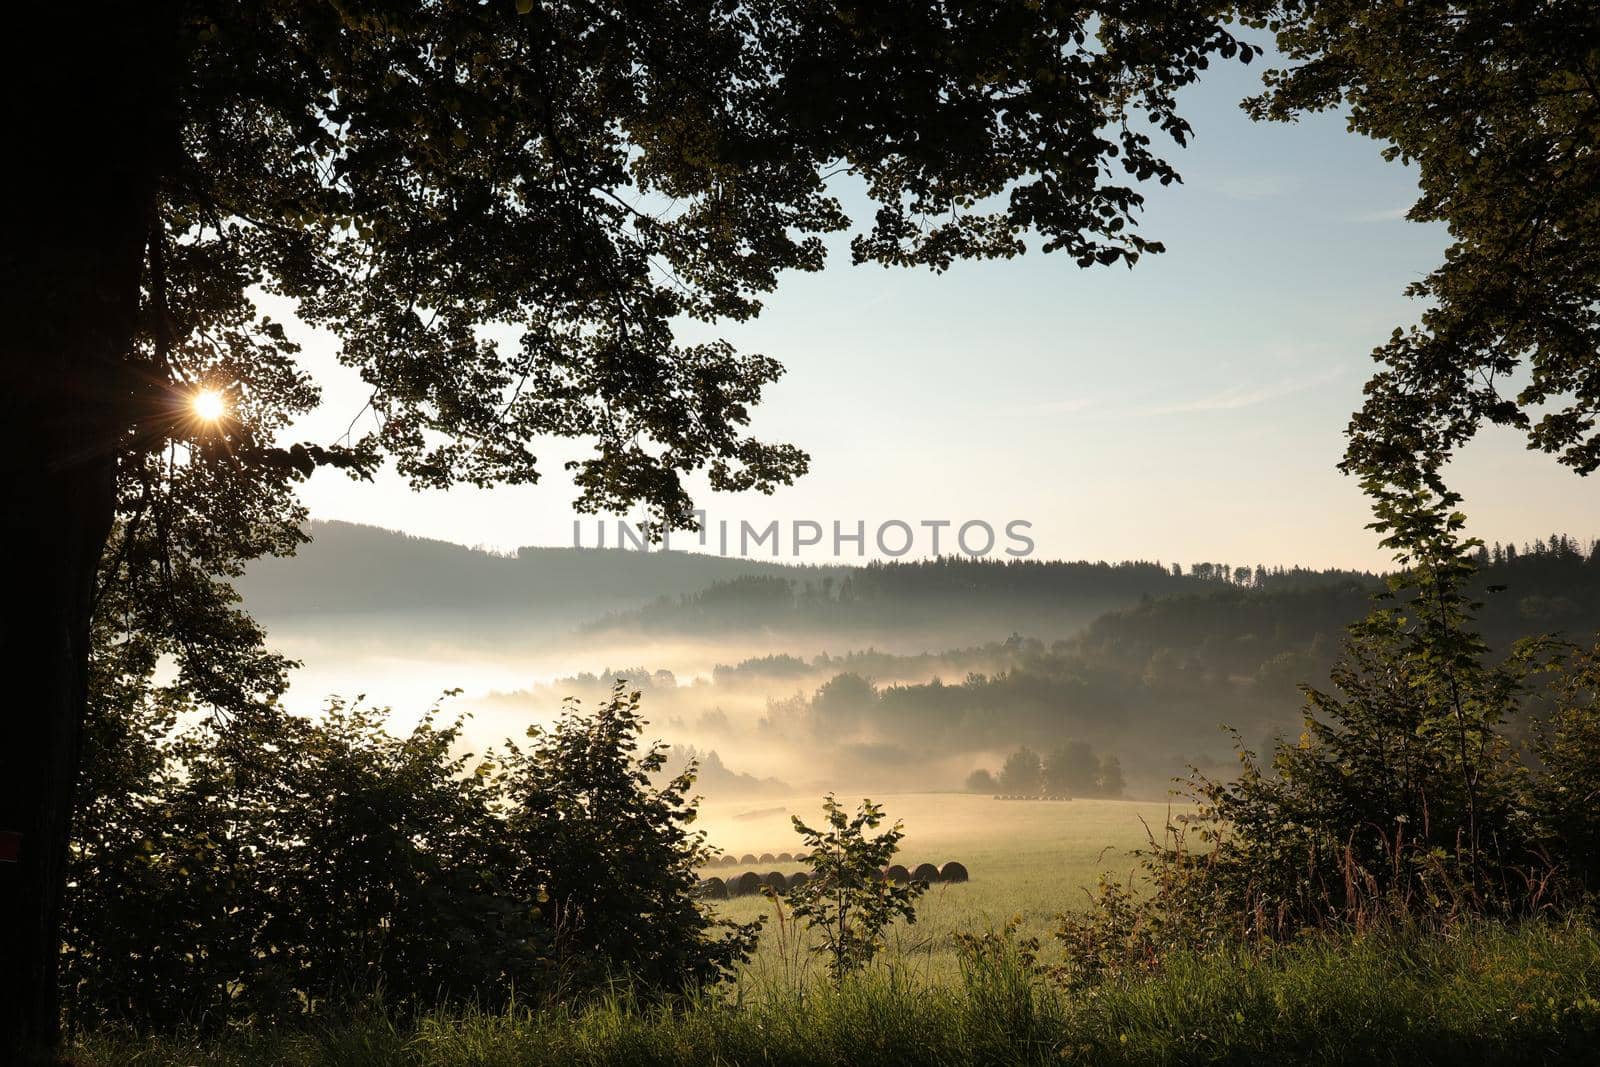 Rural landscape on a misty summer morning.